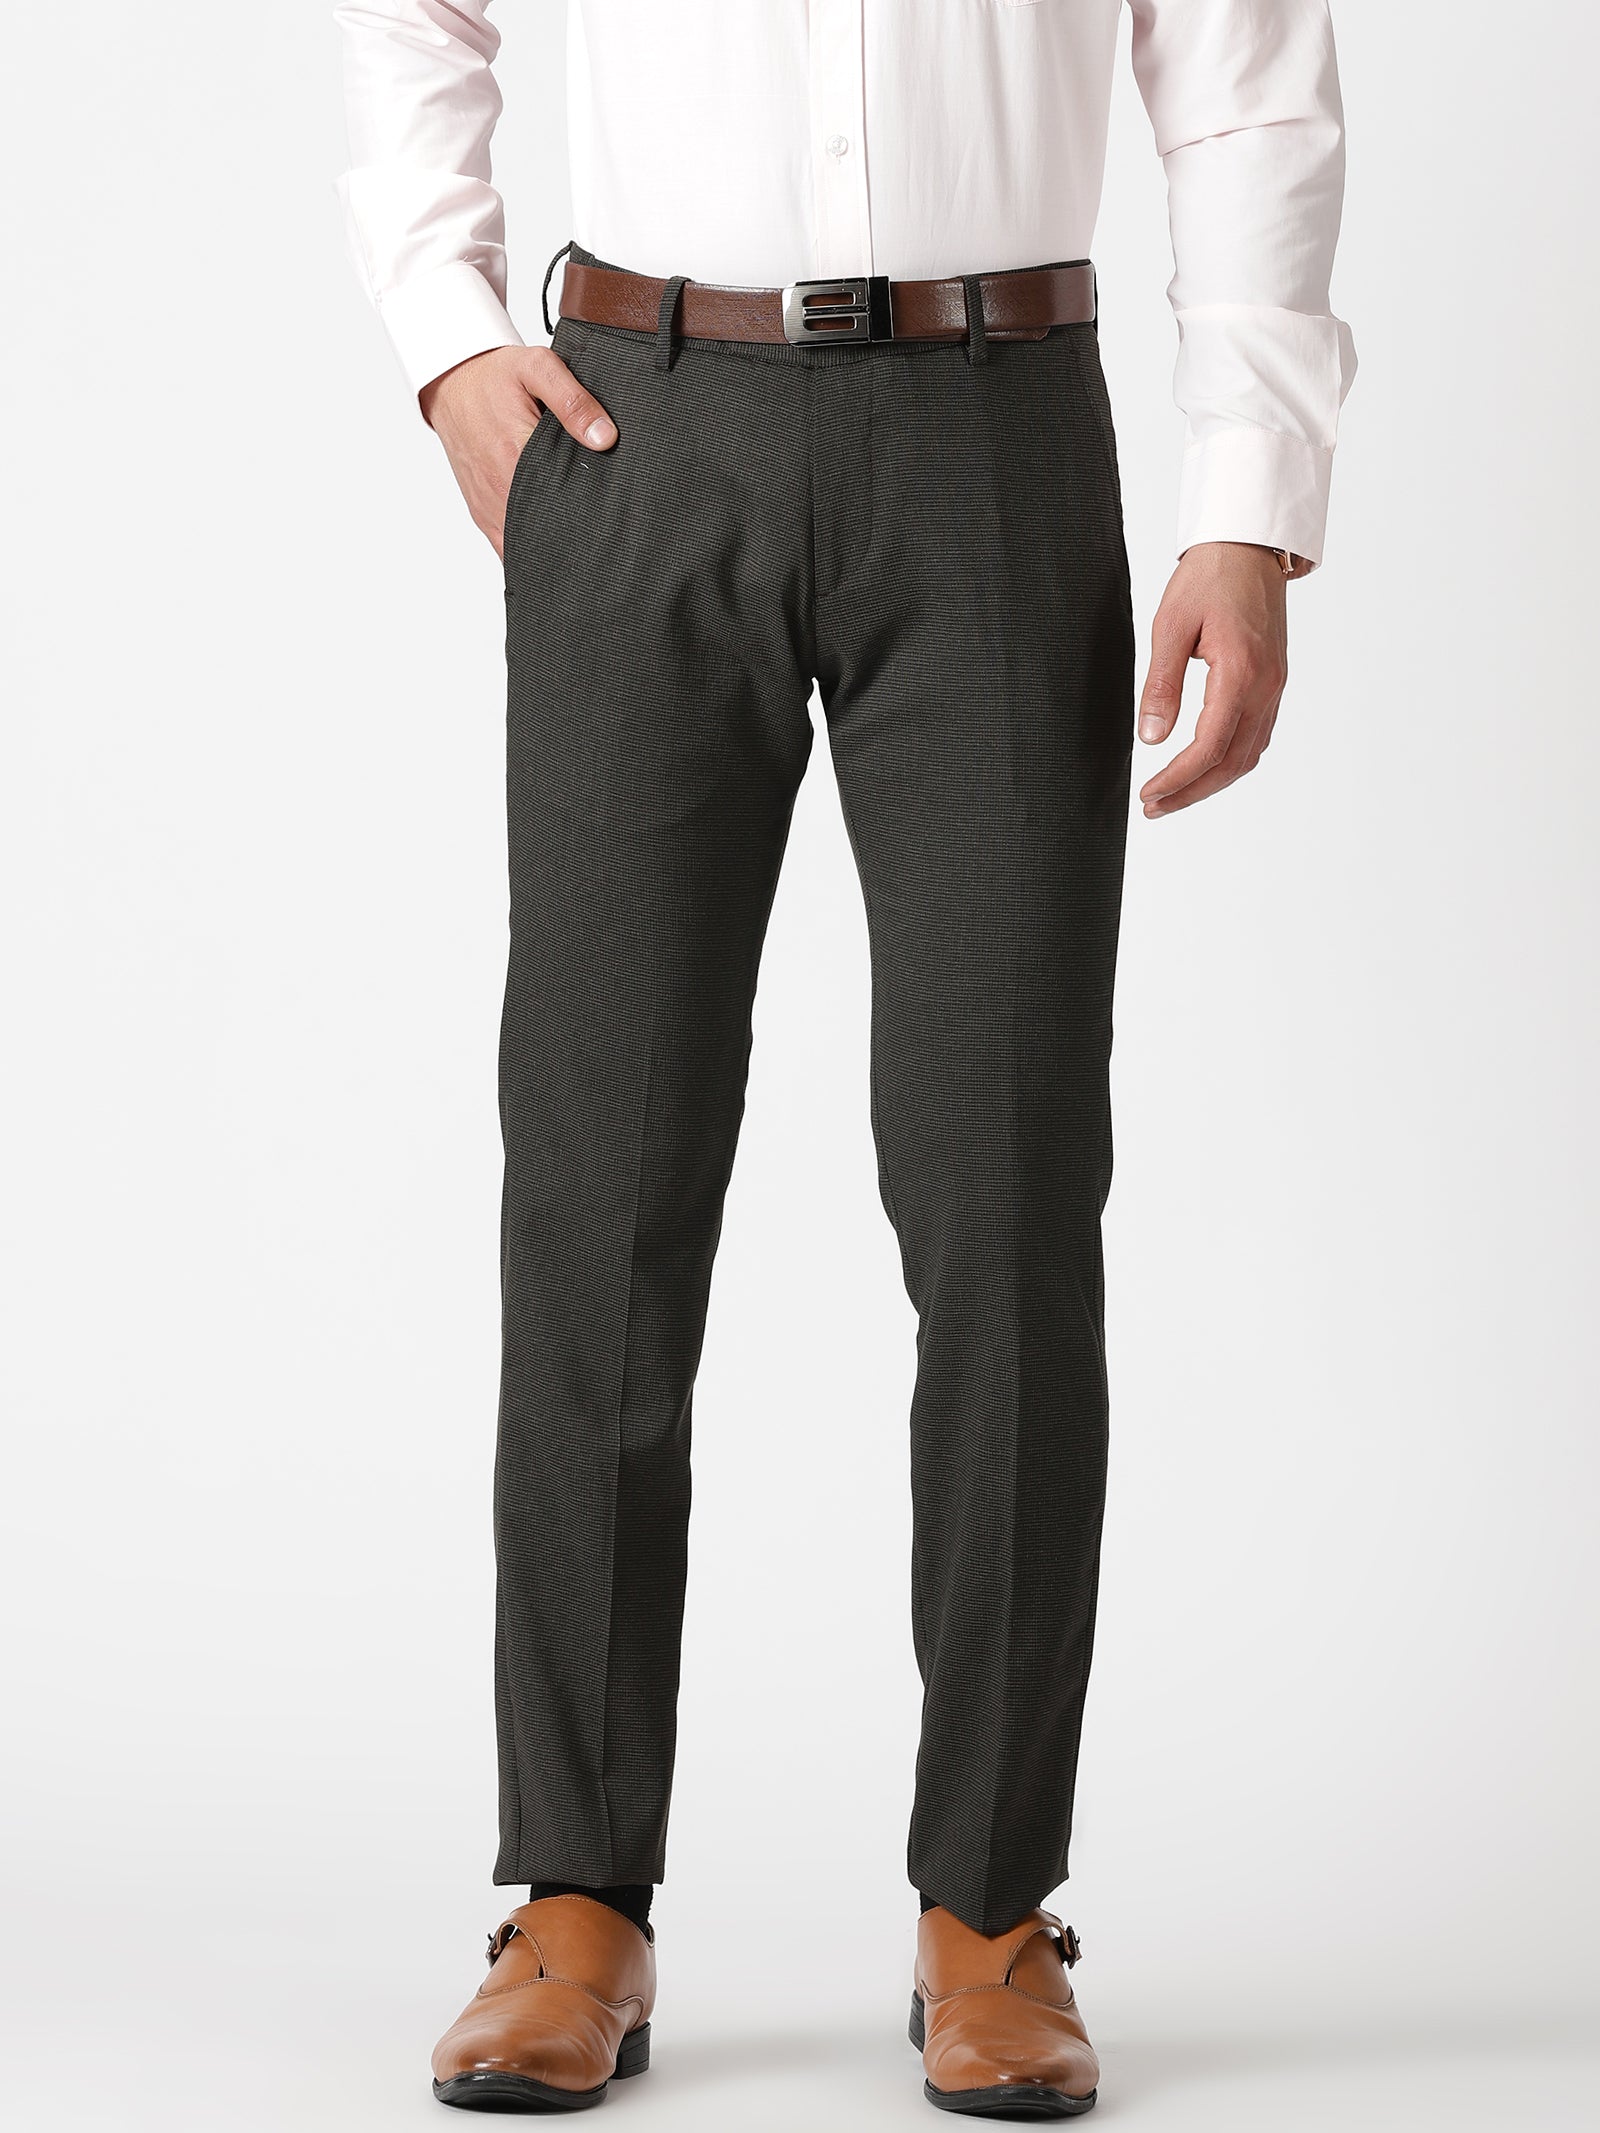 DENNISON Men Smart Self Design Tapered Fit Formal Trousers   dennisonfashionindia